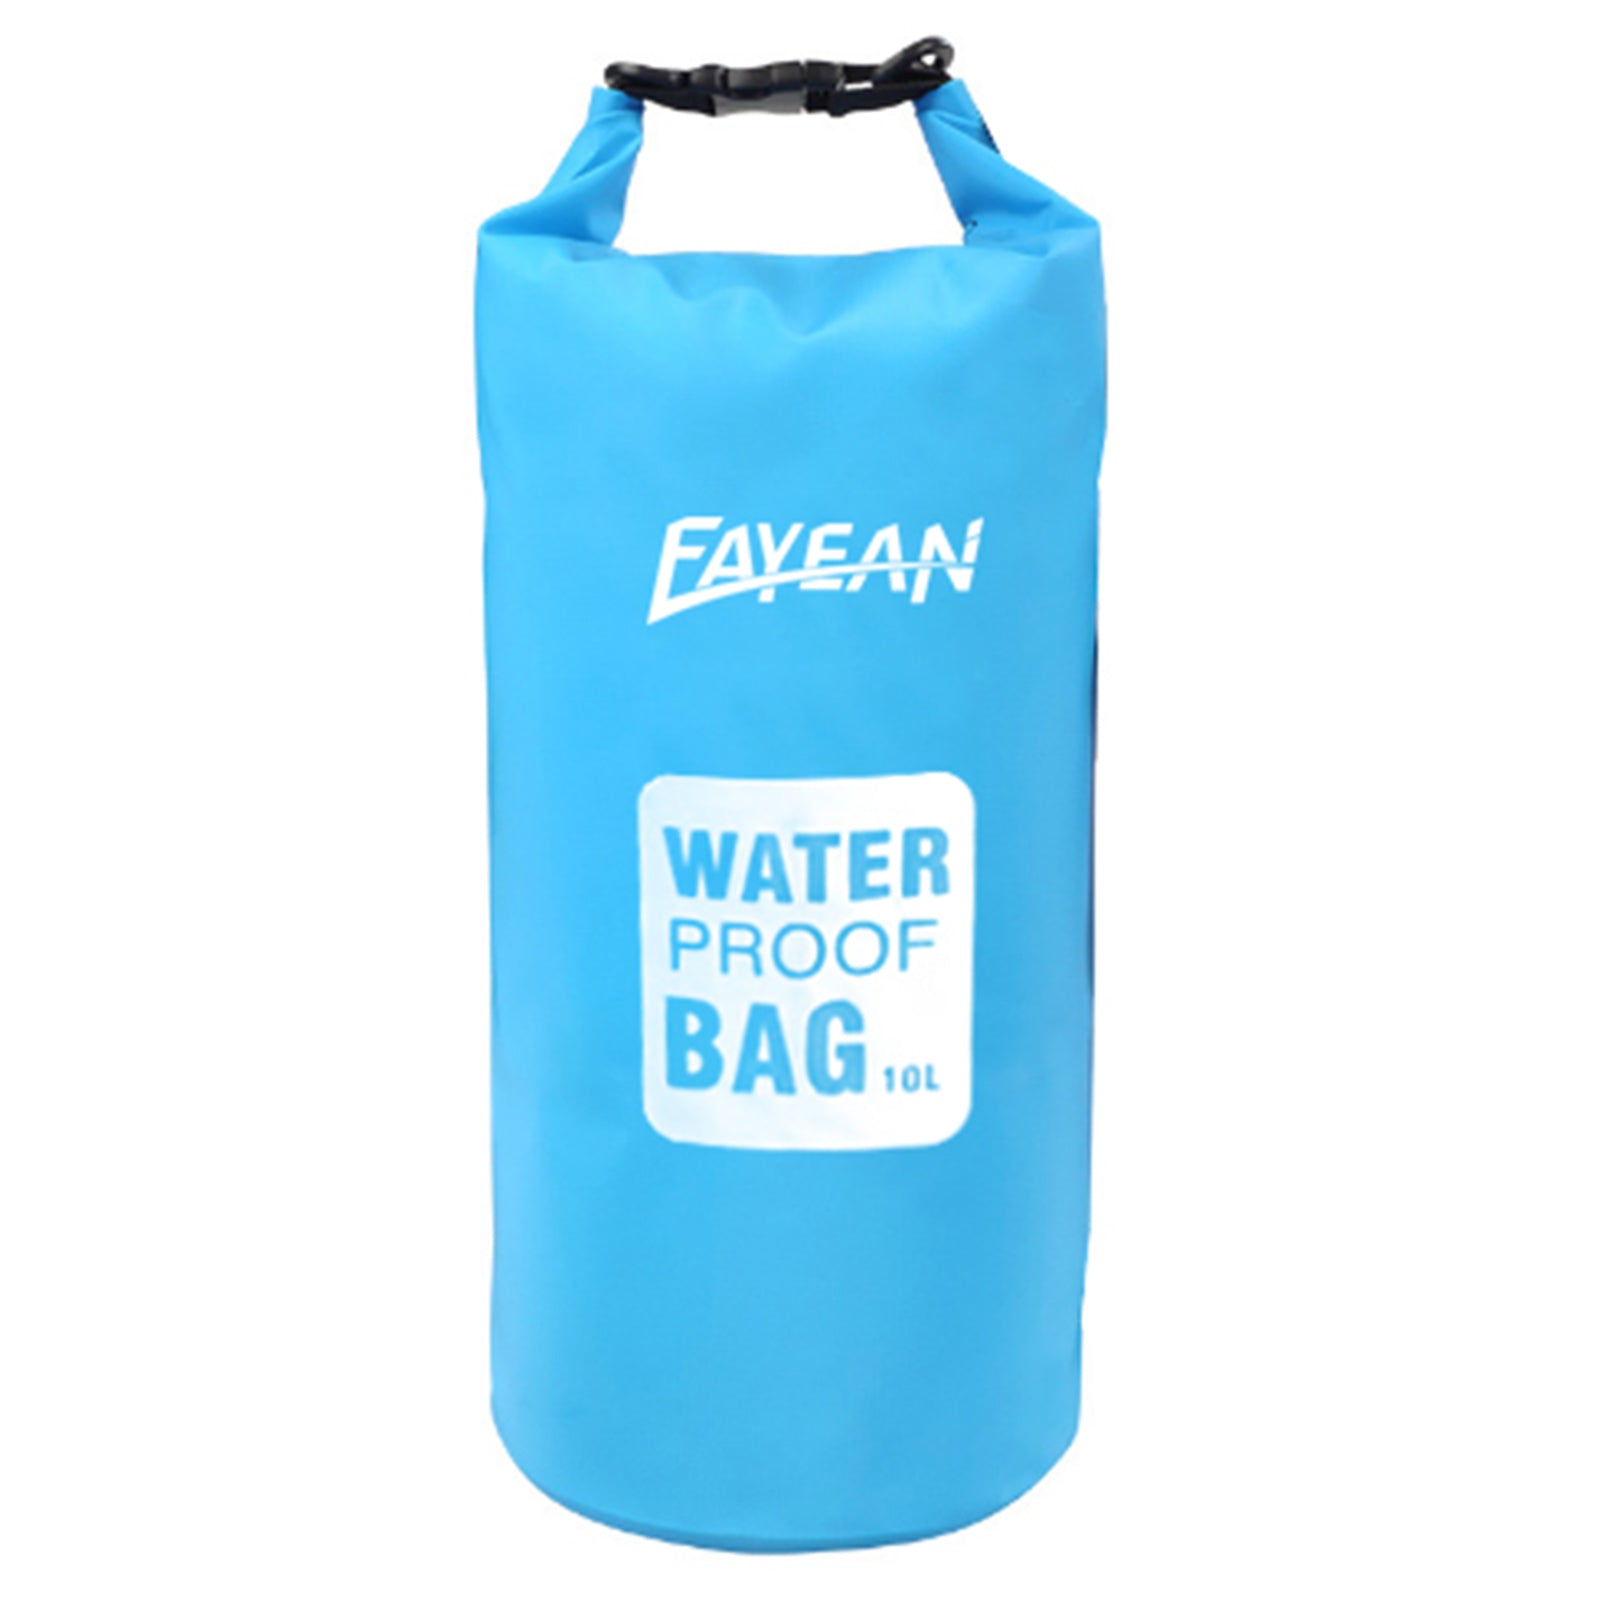 water-proof bag